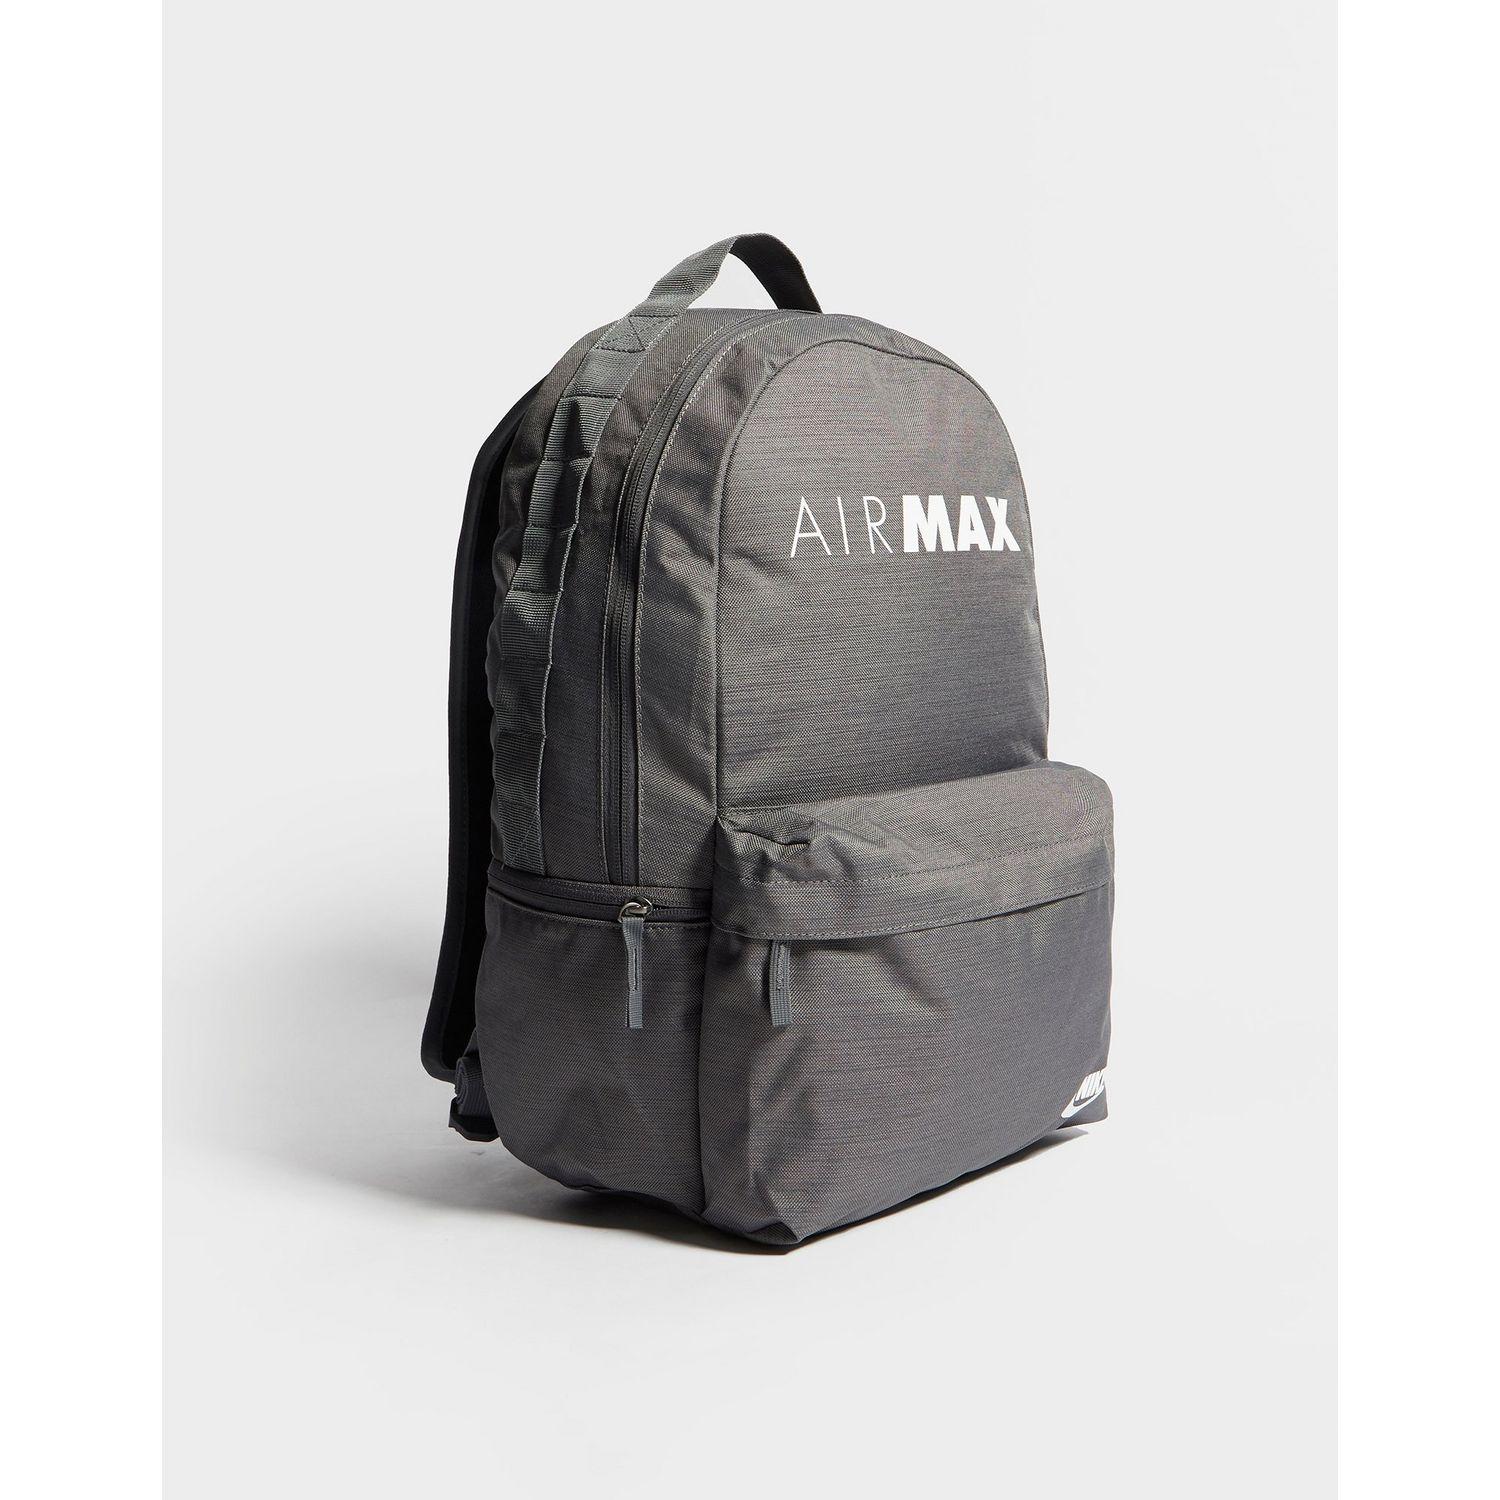 air max backpack nike hot 82c16 75fa0